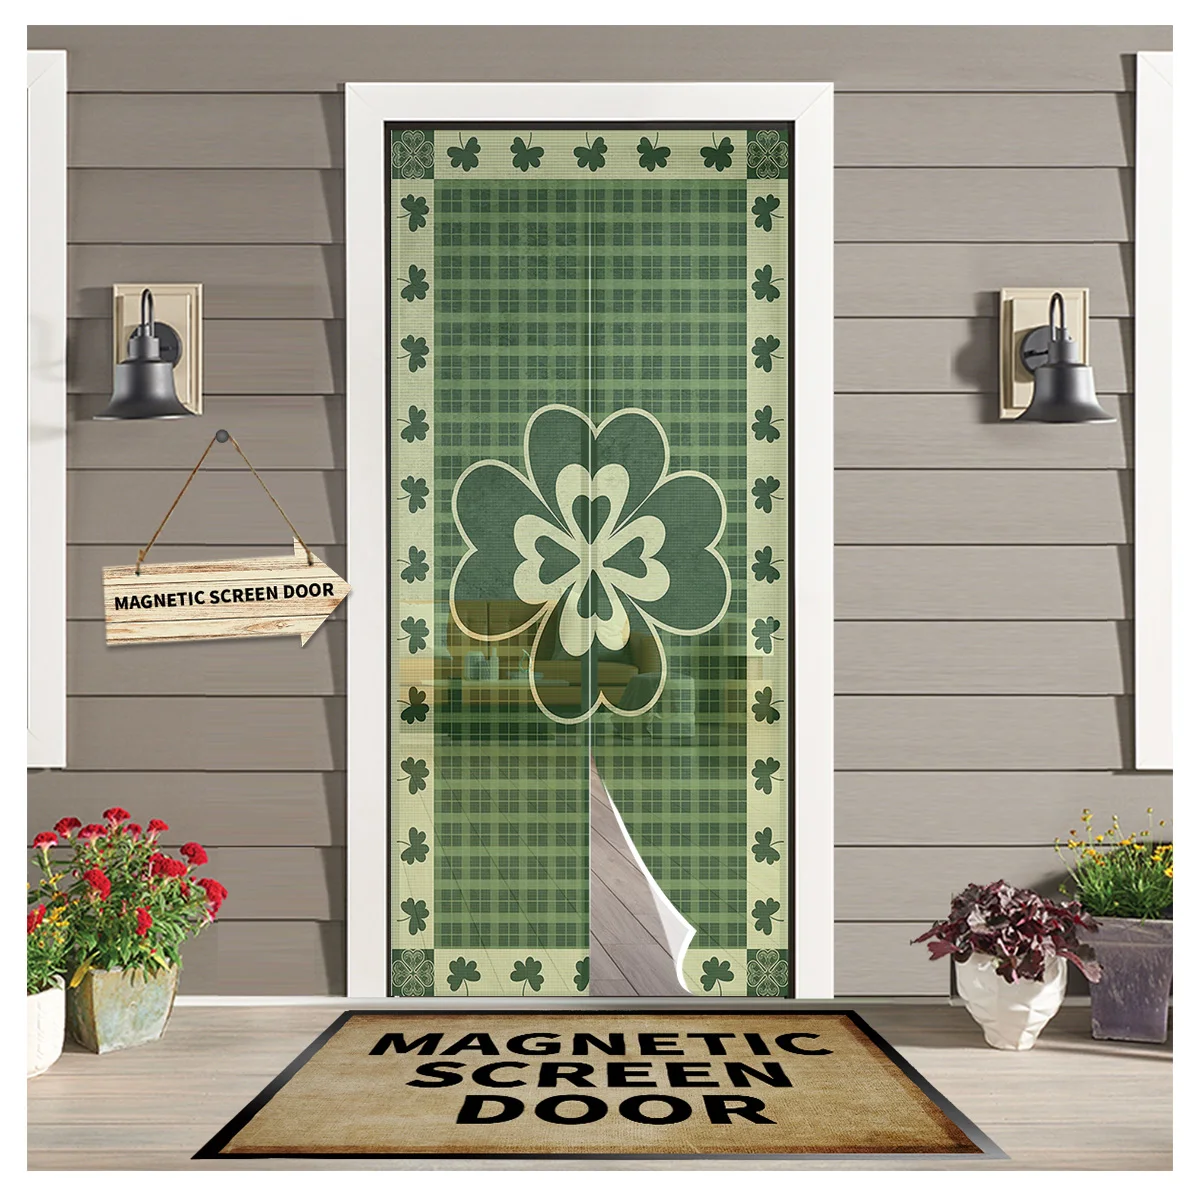 

St Patrick'S Day Lucky Clover дверная занавеска защита от комаров кухонная Магнитная подвесная занавеска s оконный экран марлевая дверная занавеска